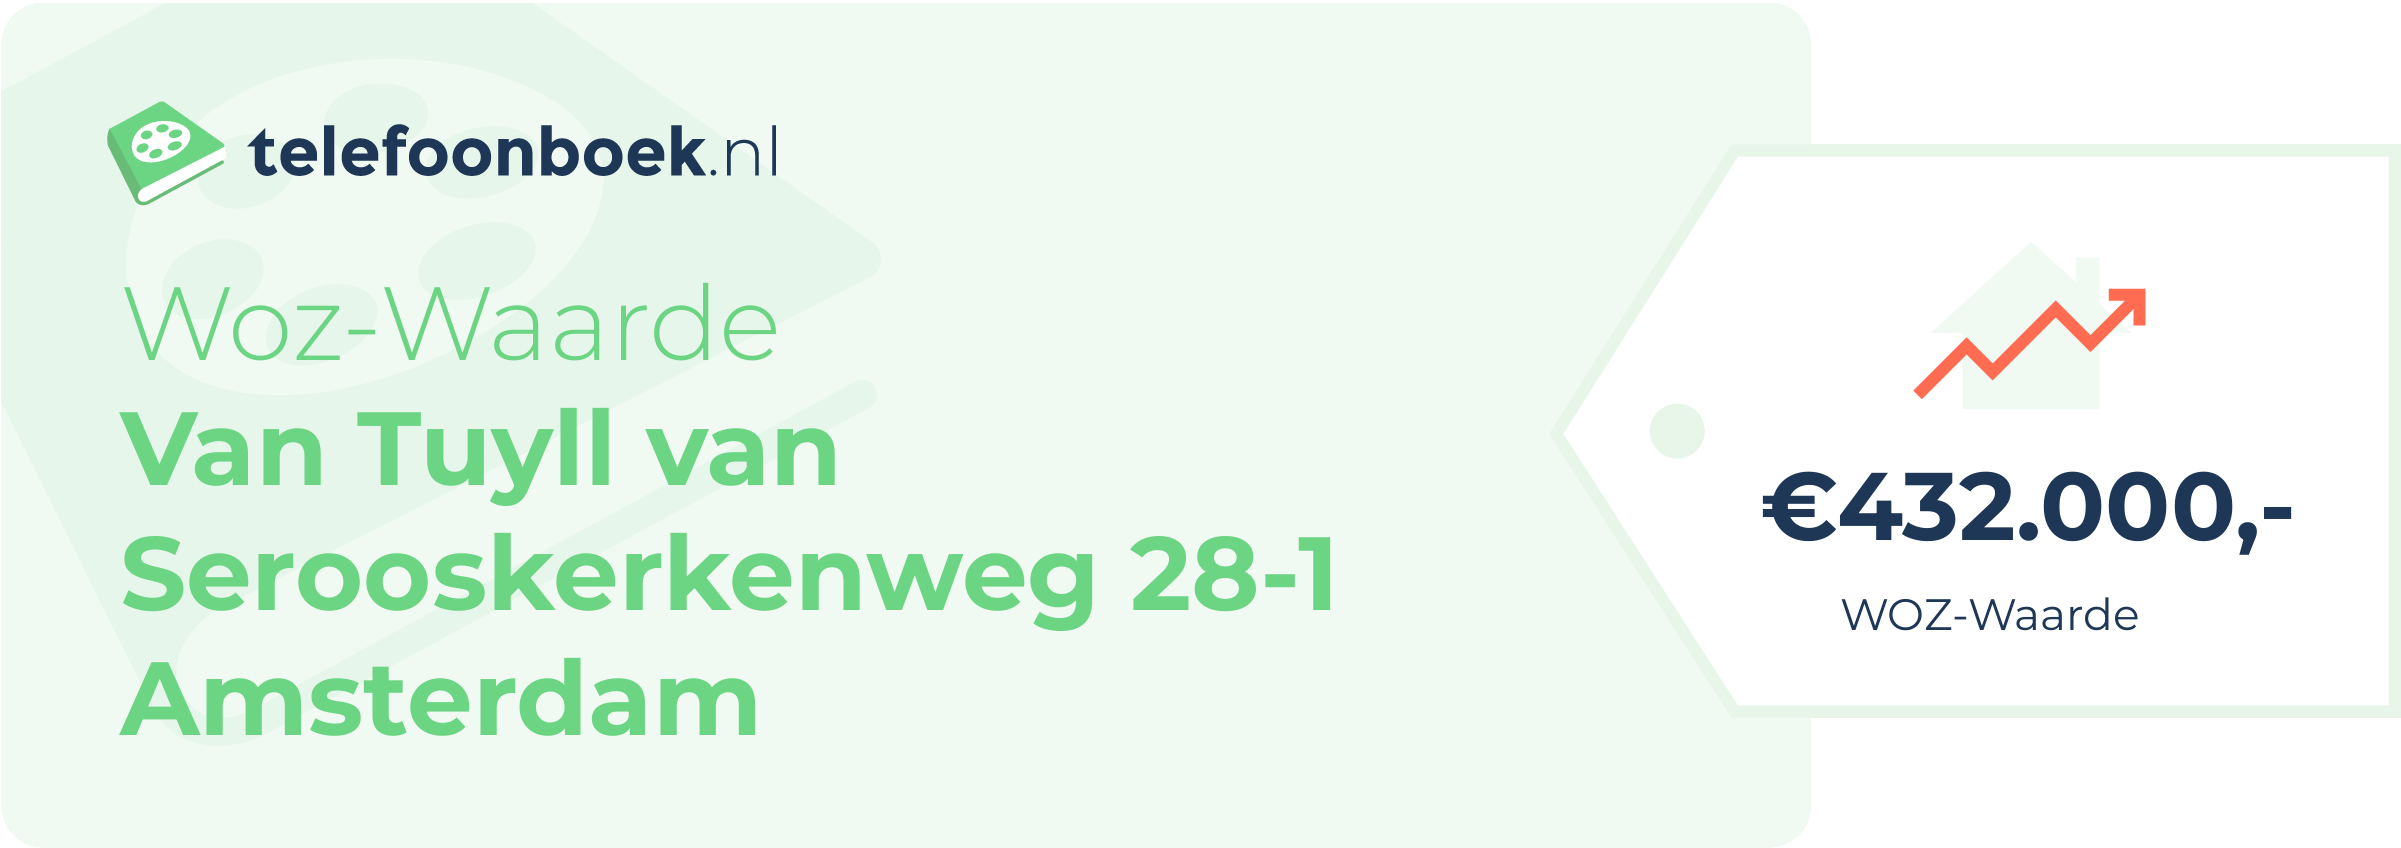 WOZ-waarde Van Tuyll Van Serooskerkenweg 28-1 Amsterdam